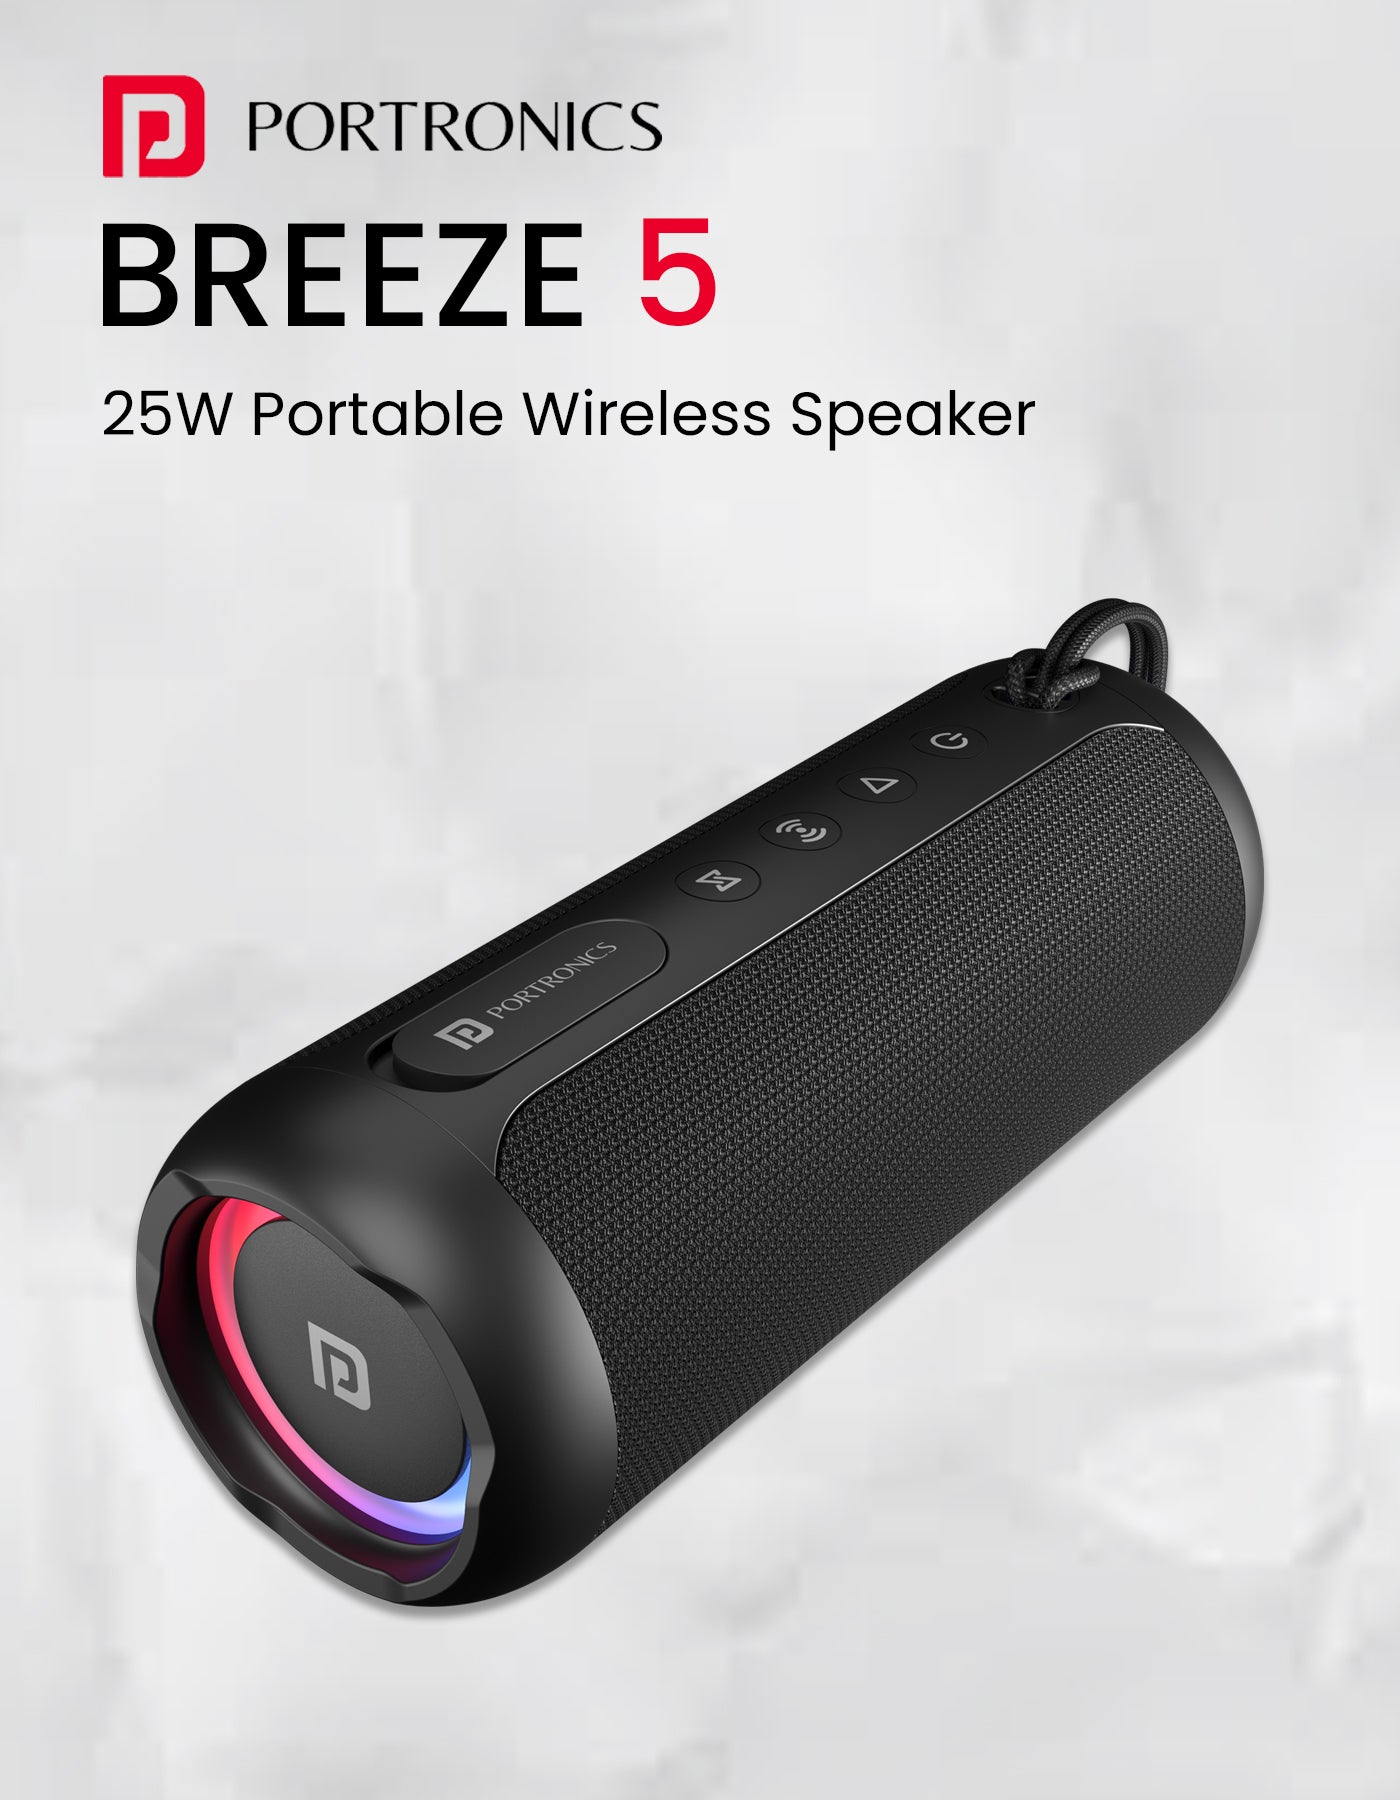 Portronics breeze 5 wireless party speaker with 25w HD Sound